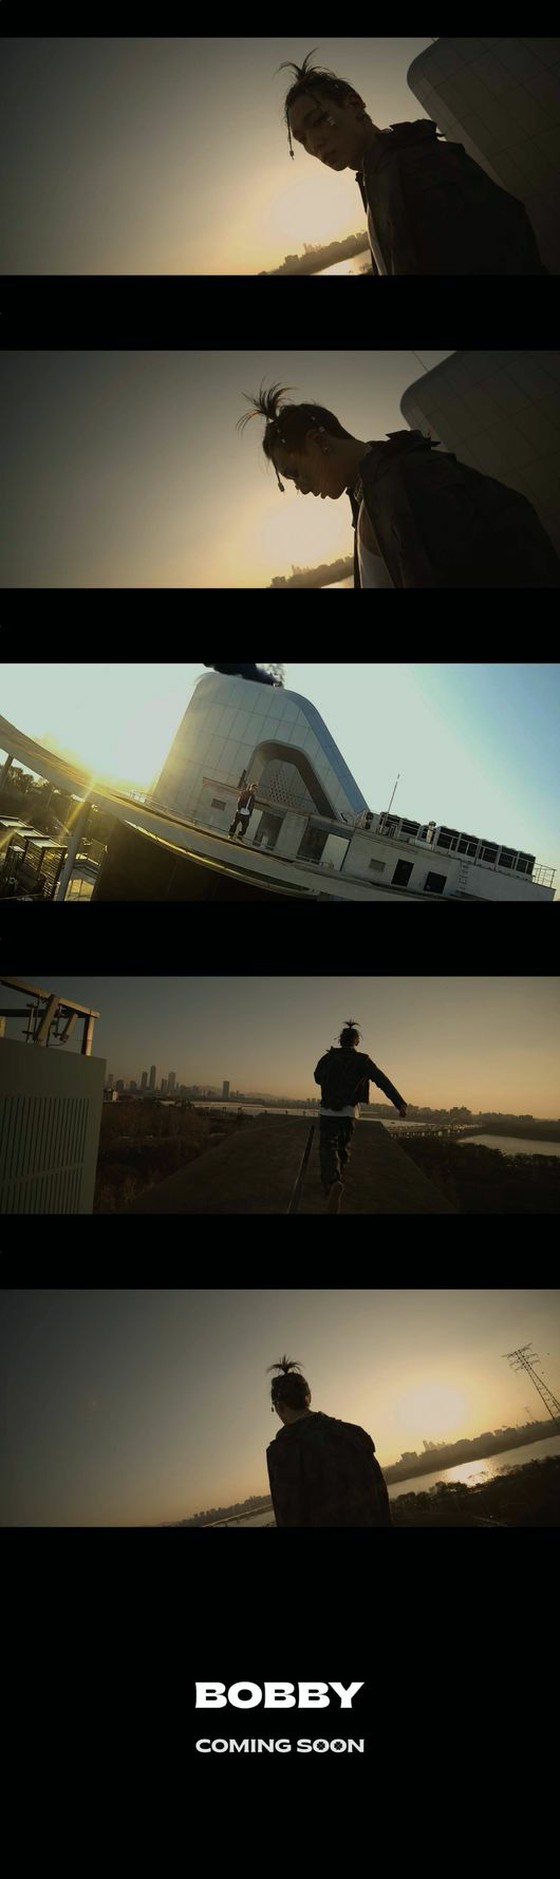 BOBBY (아이콘), 3 년 4 개월 만에 솔로 컴백! "강렬한 사운드 + 비주얼"= 티저 영상 공개